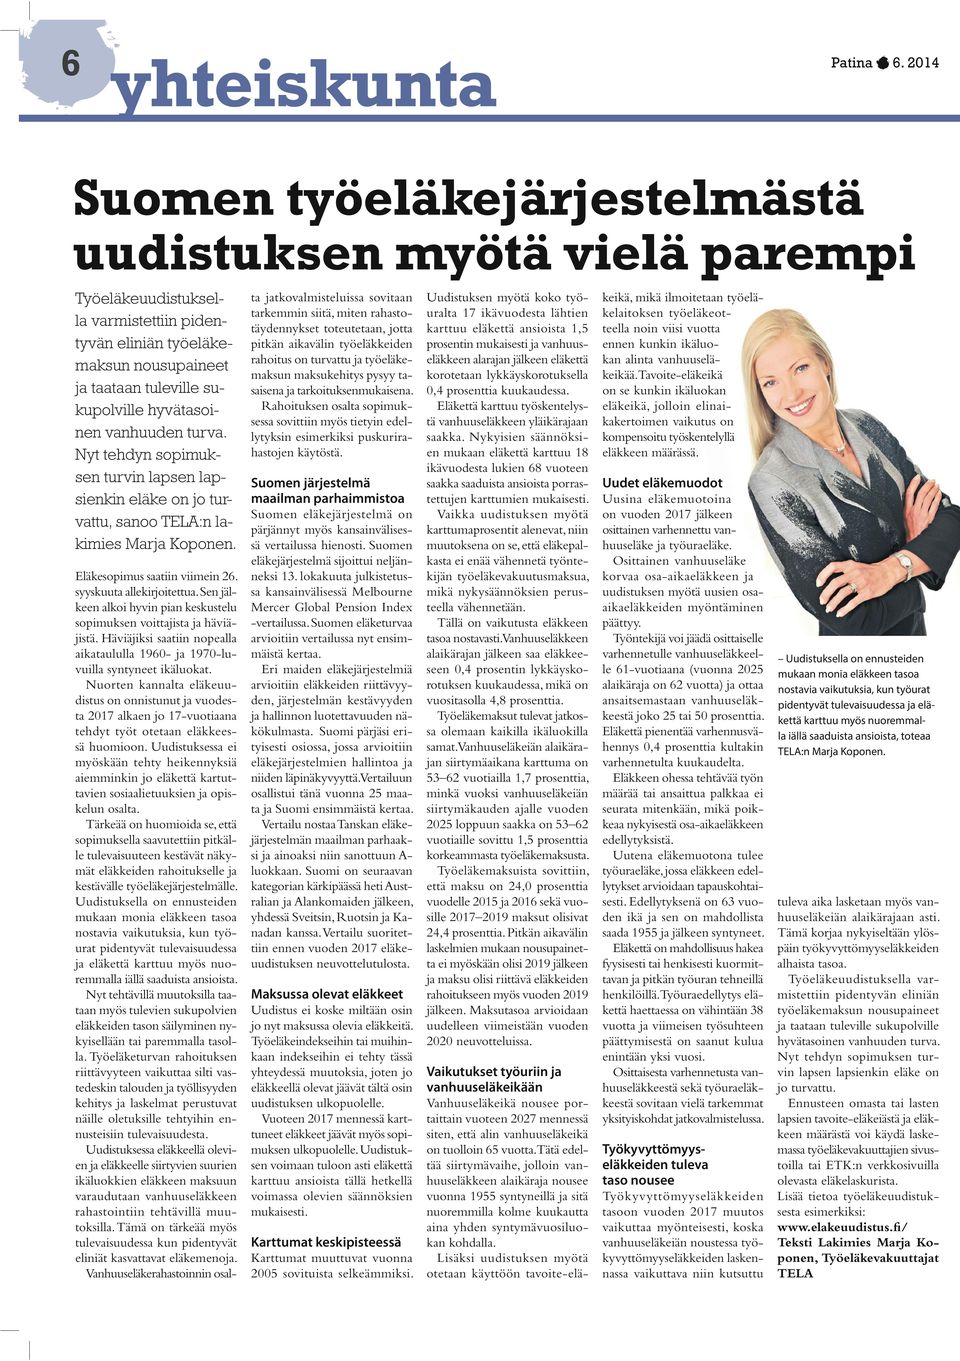 vanhuuden turva. Nyt tehdyn sopimuksen turvin lapsen lapsienkin eläke on jo turvattu, sanoo TELA:n lakimies Marja Koponen. Eläkesopimus saatiin viimein 26. syyskuuta allekirjoitettua.